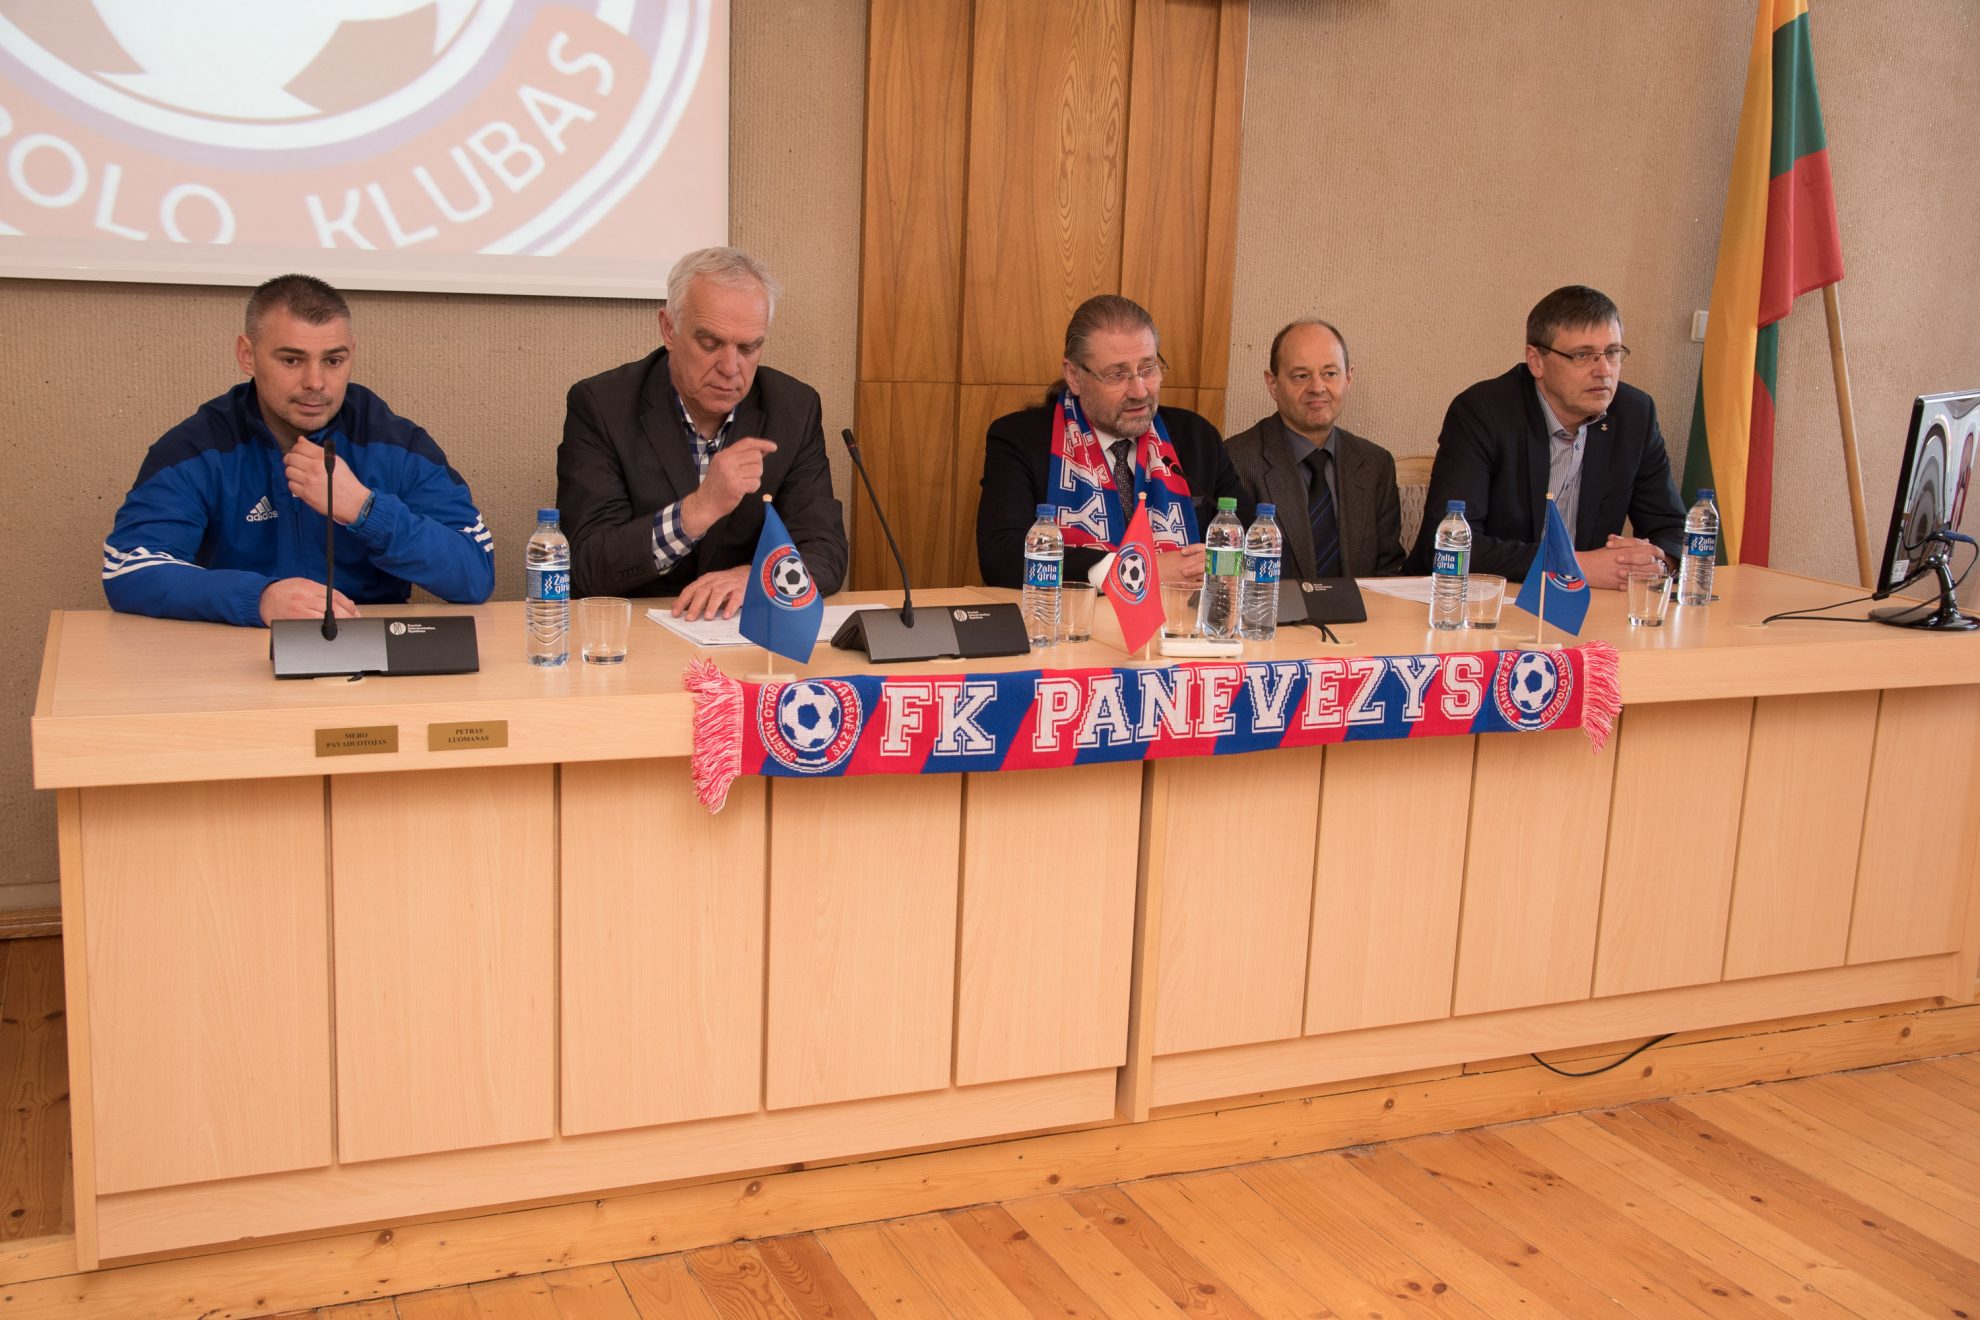 Vasario pradžioje prasidėjęs FK „Panevėžys“ pasirengimo sezonas pasiekė finišo tiesiąją. Specialioje spaudos konferencijoje klubo vadovai pristatė klubo pokyčius ir pasikeitusią ekipos sudėtį.